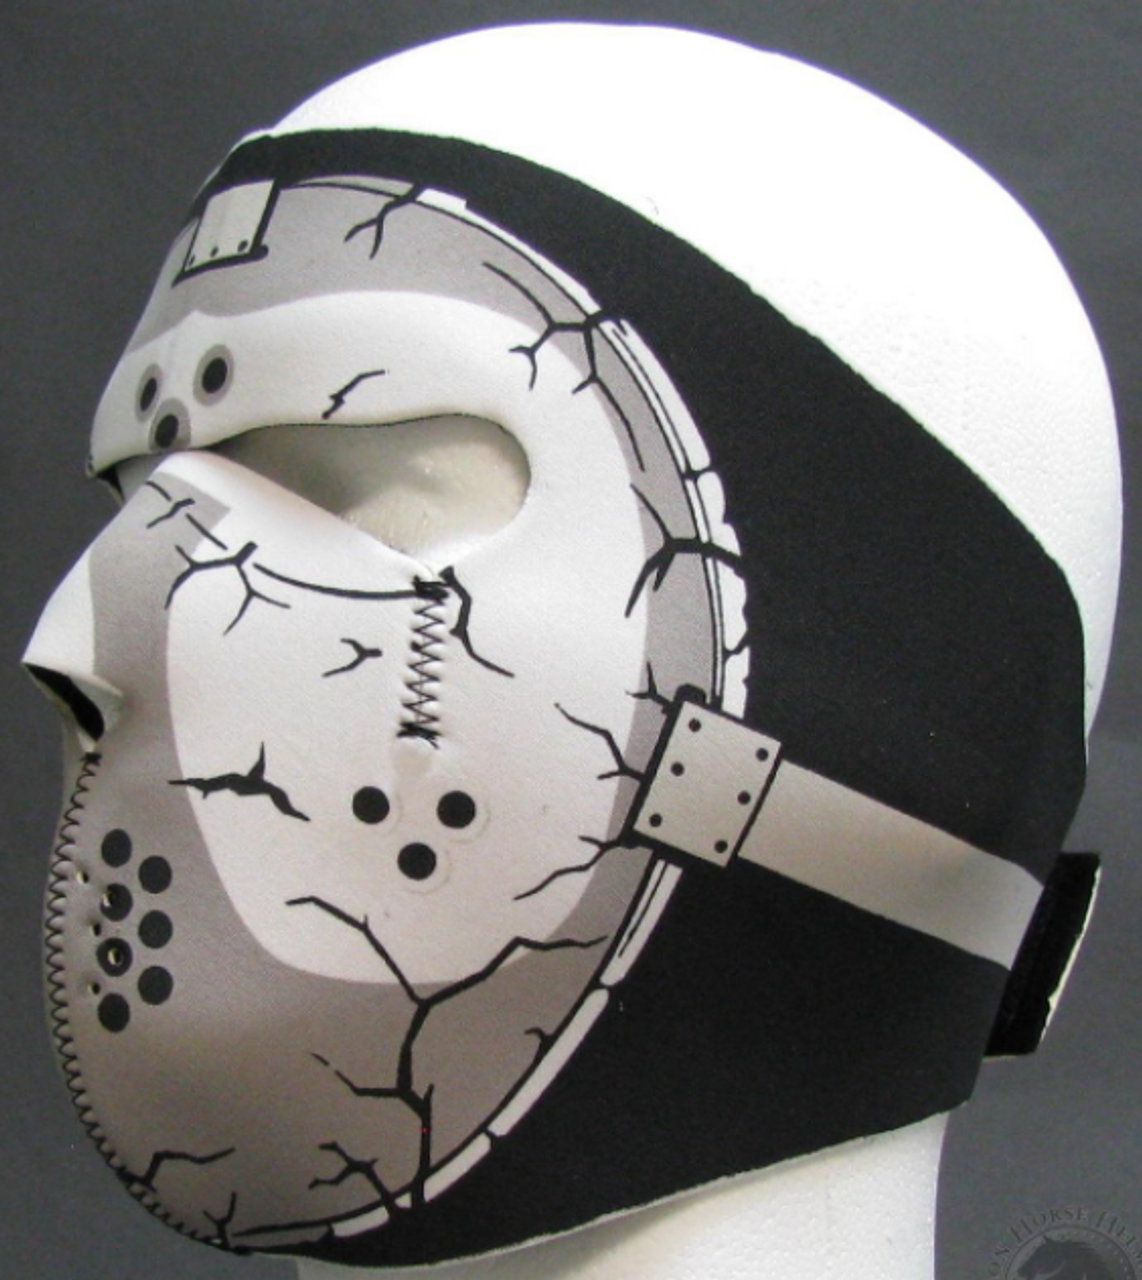 Full Face Neoprene Face Mask - Hockey - Motorcycle Mask - FMT21-HI